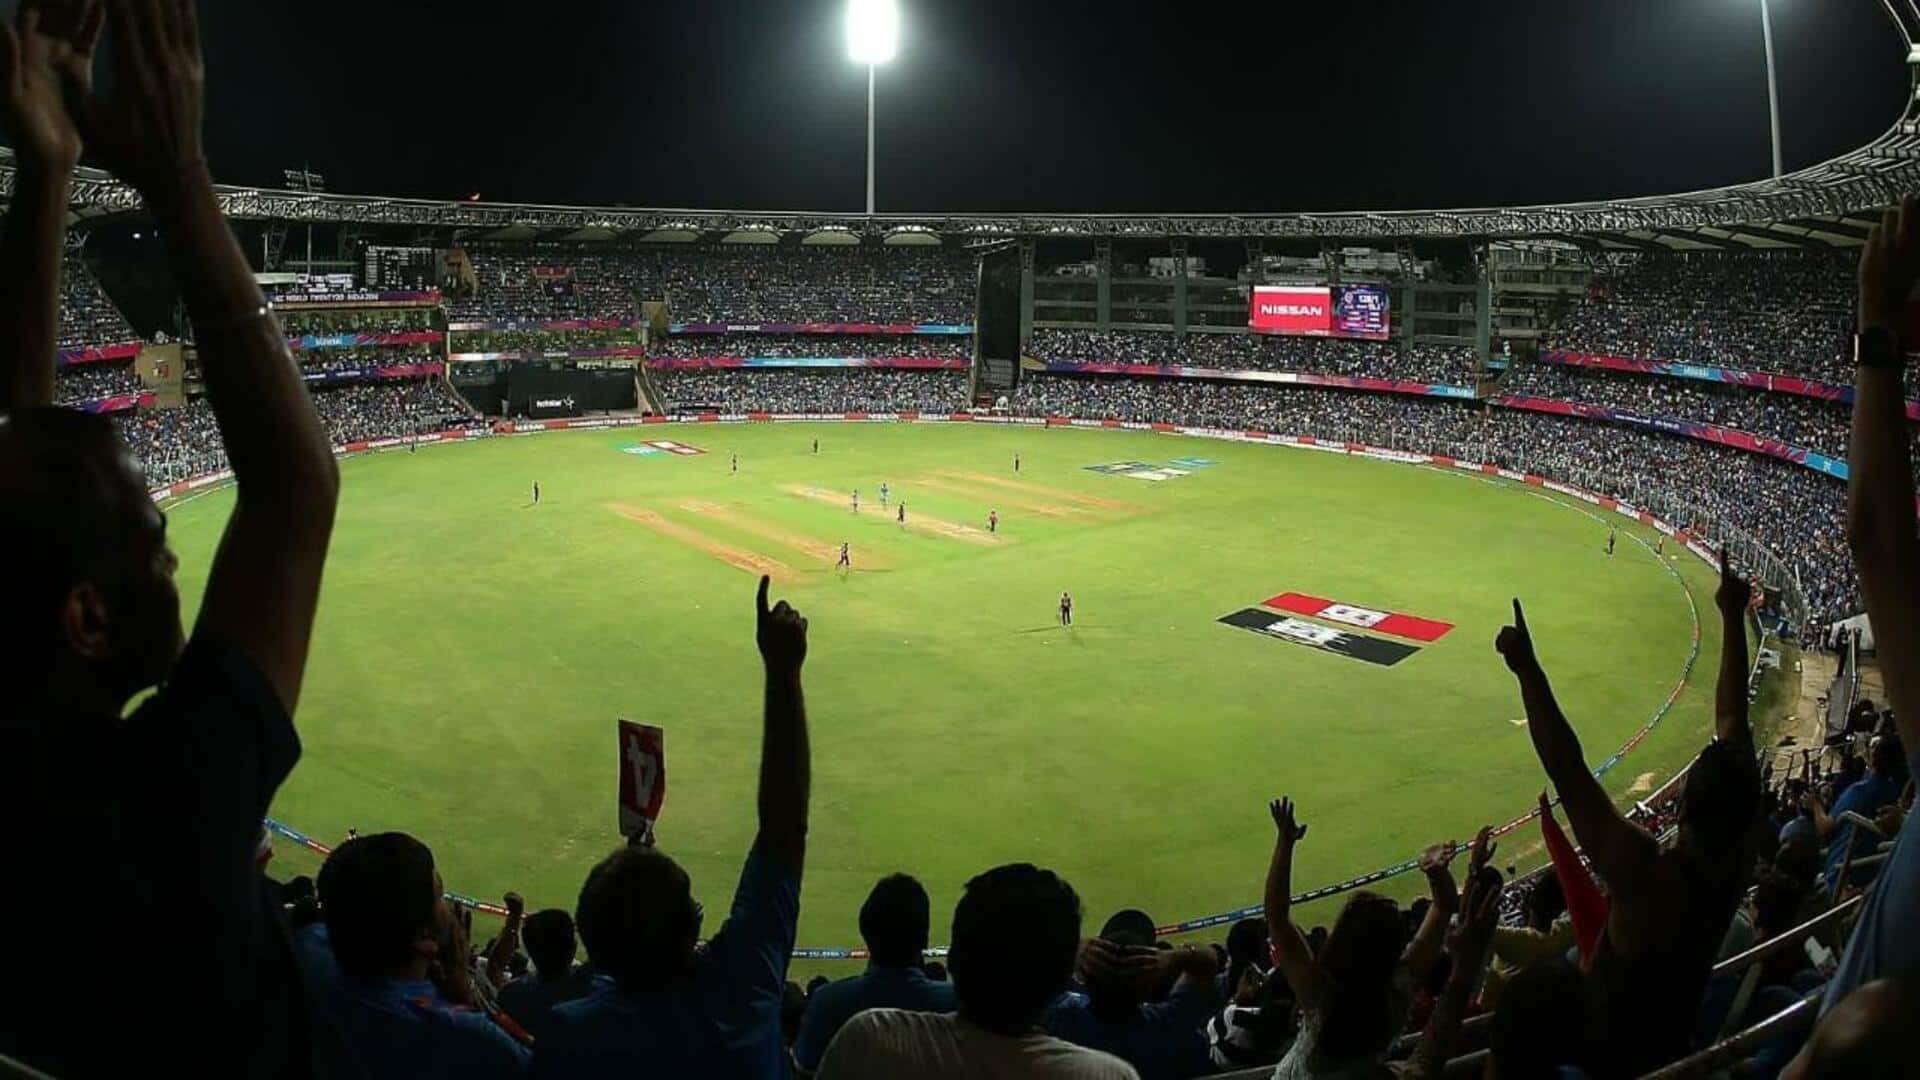 भारत बनाम ऑस्ट्रेलिया: वनडे क्रिकेट में वानखेड़े स्टेडियम के दिलचस्प आंकड़े और अहम जानकारी 